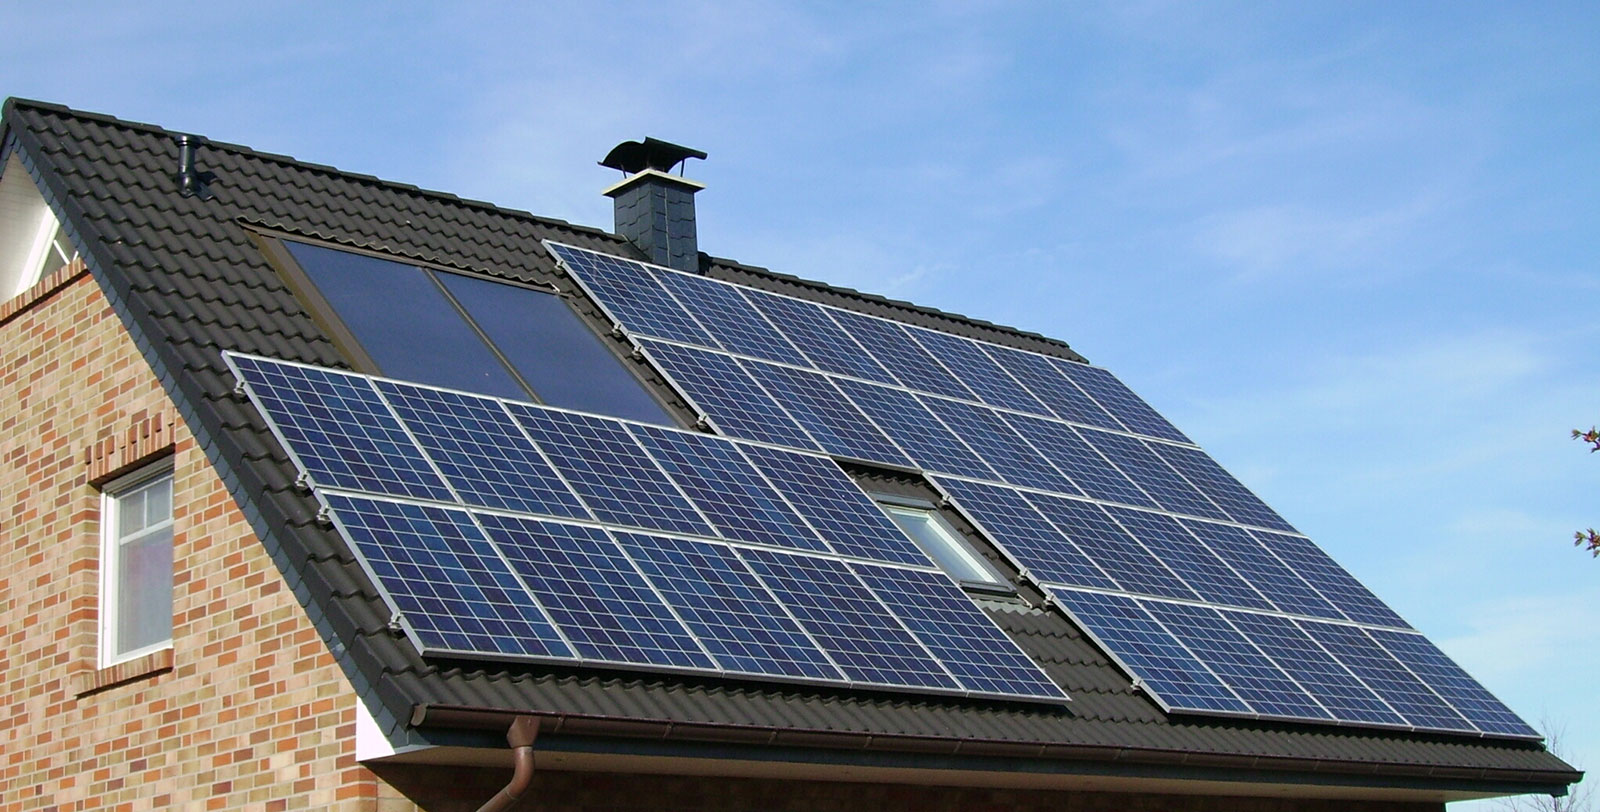 Solarzellen auf Dach eines Wohnhauses